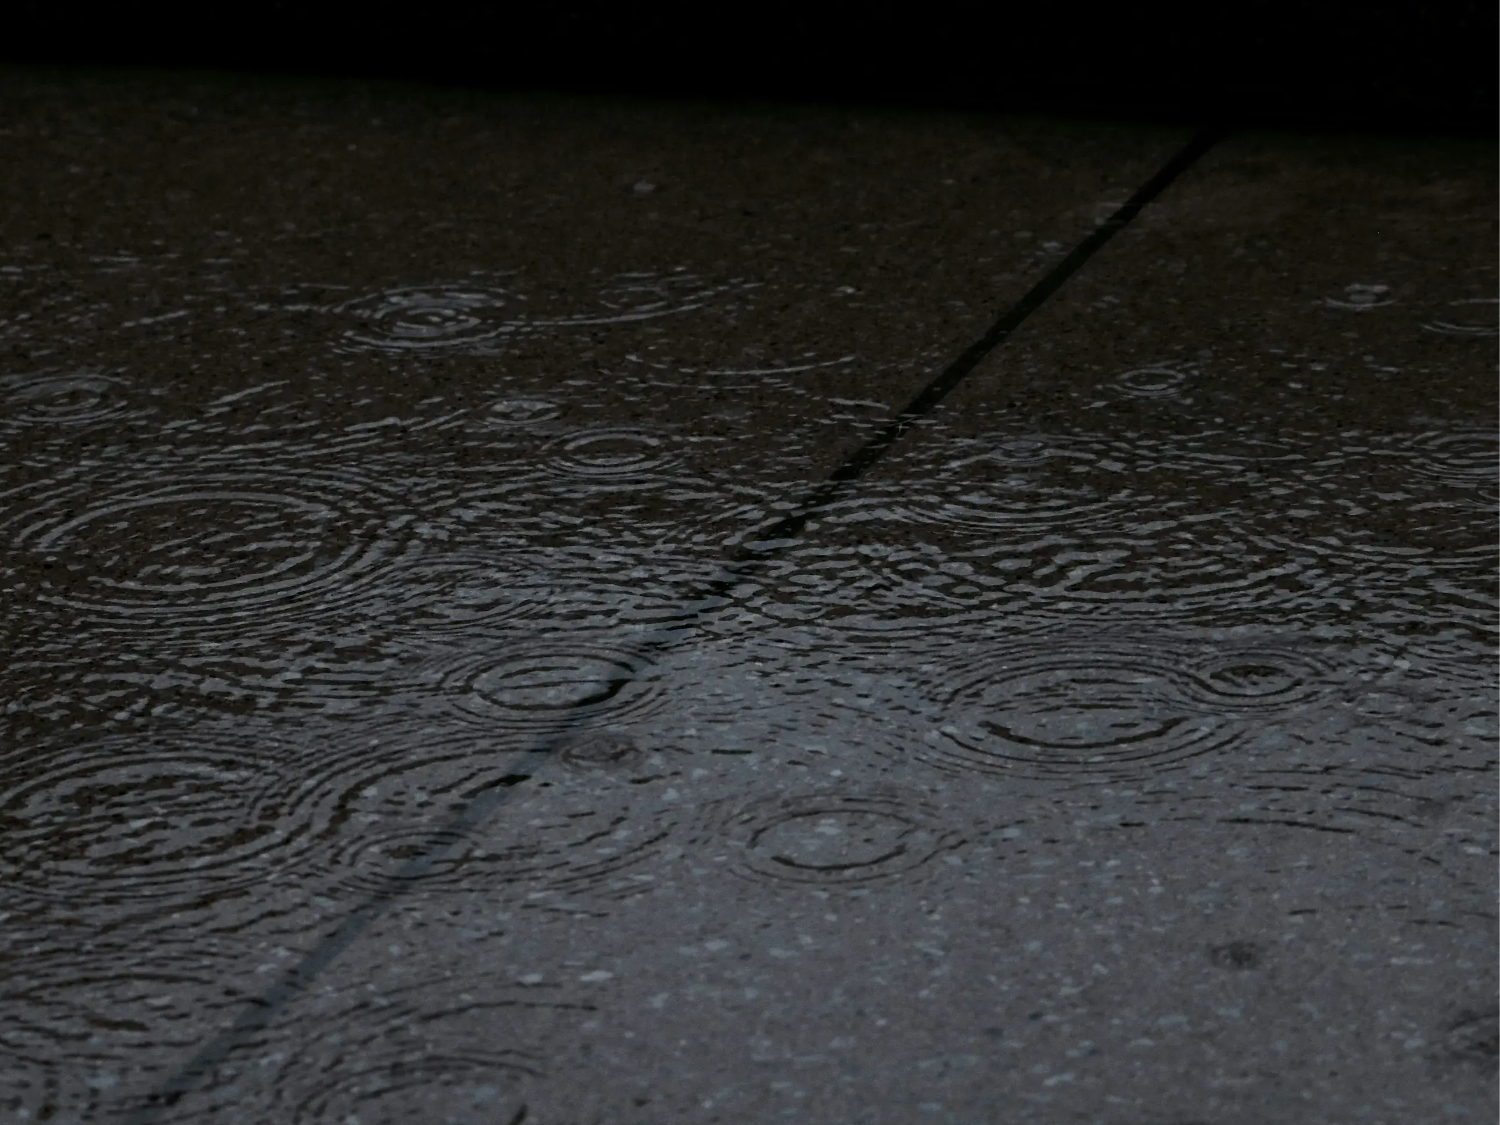 Rain falling on the pavement